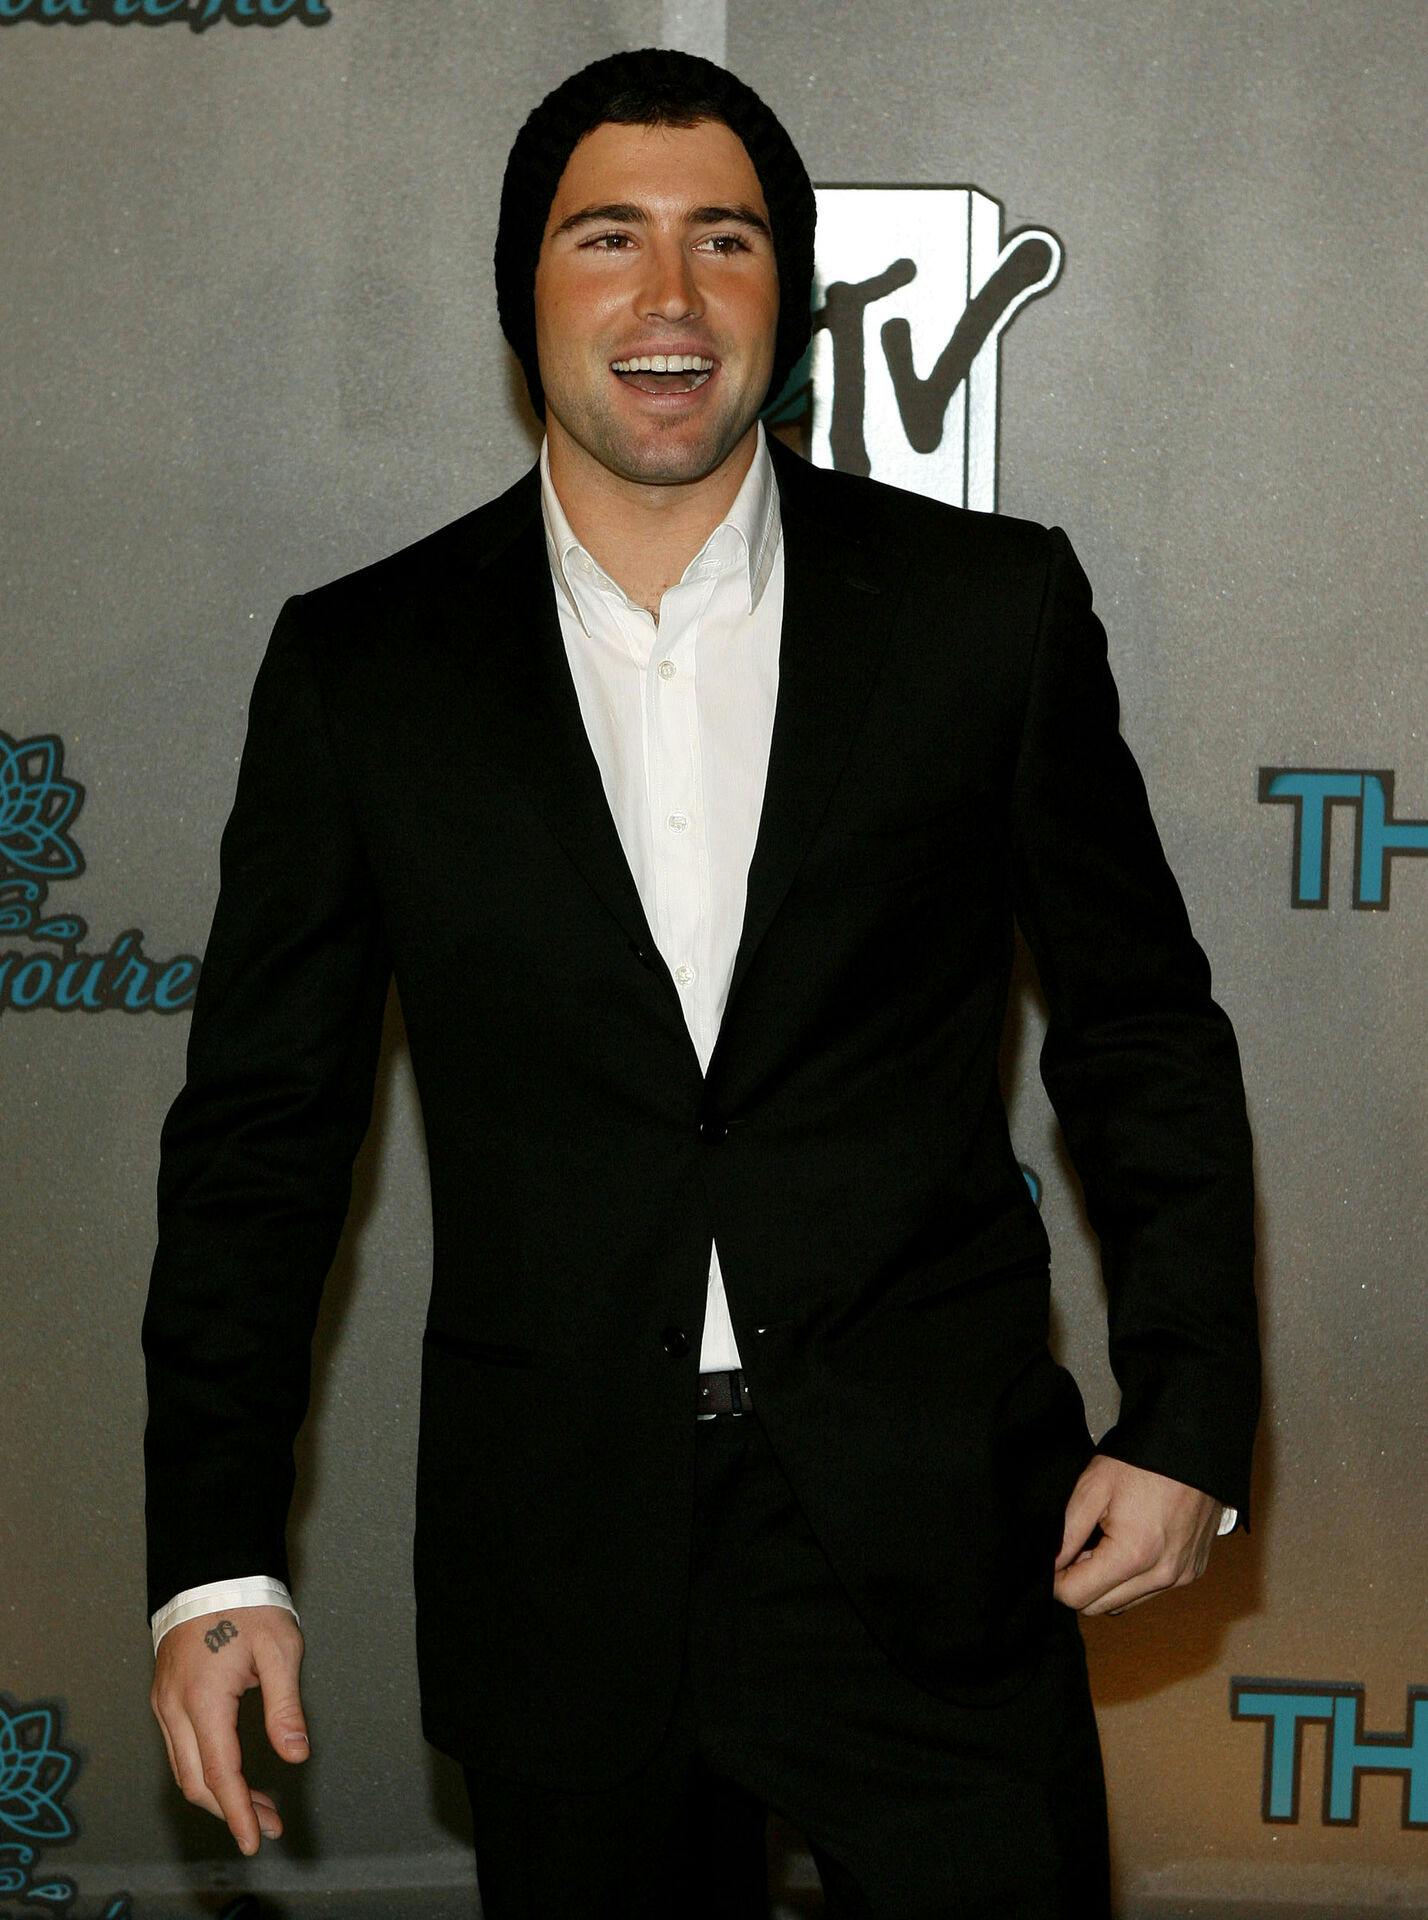 Brody Jenner blev først kendt, da han tonede frem på MTV i 2007 som Lauren Conrads kæreste i realityserien "The Hills".